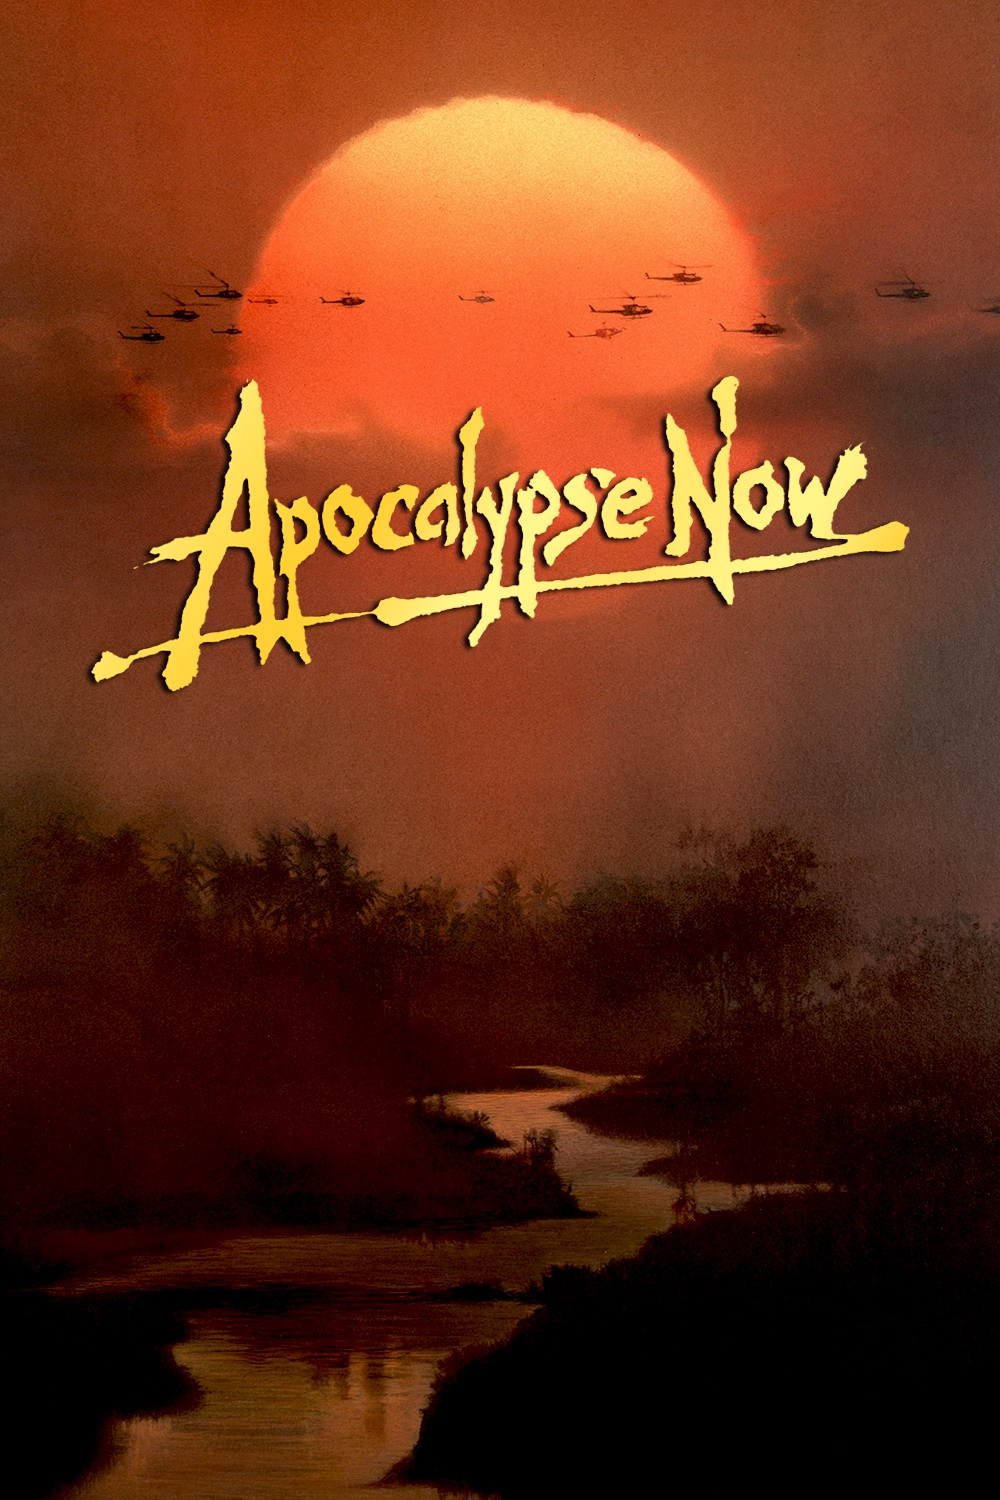 Apocalypse now online free